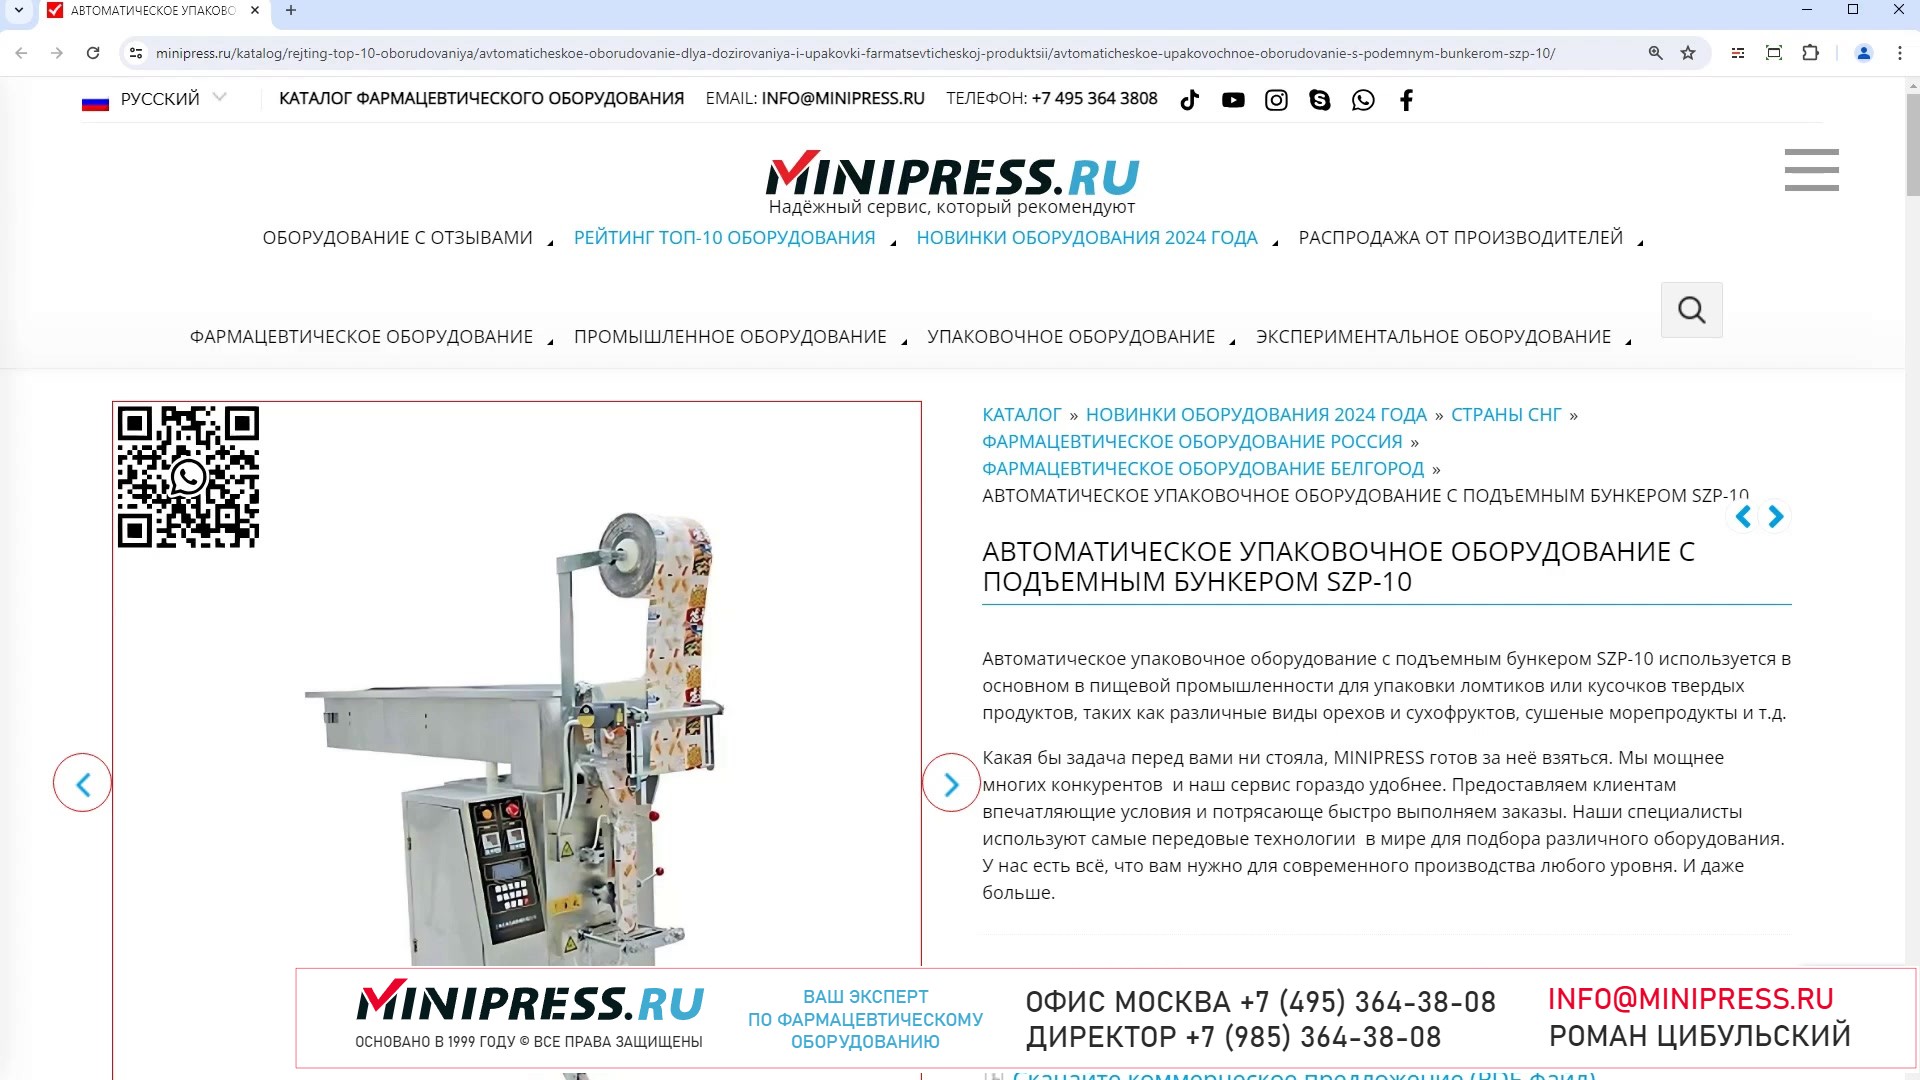 Minipress.ru Автоматическое упаковочное оборудование с подъемным бункером SZP-10